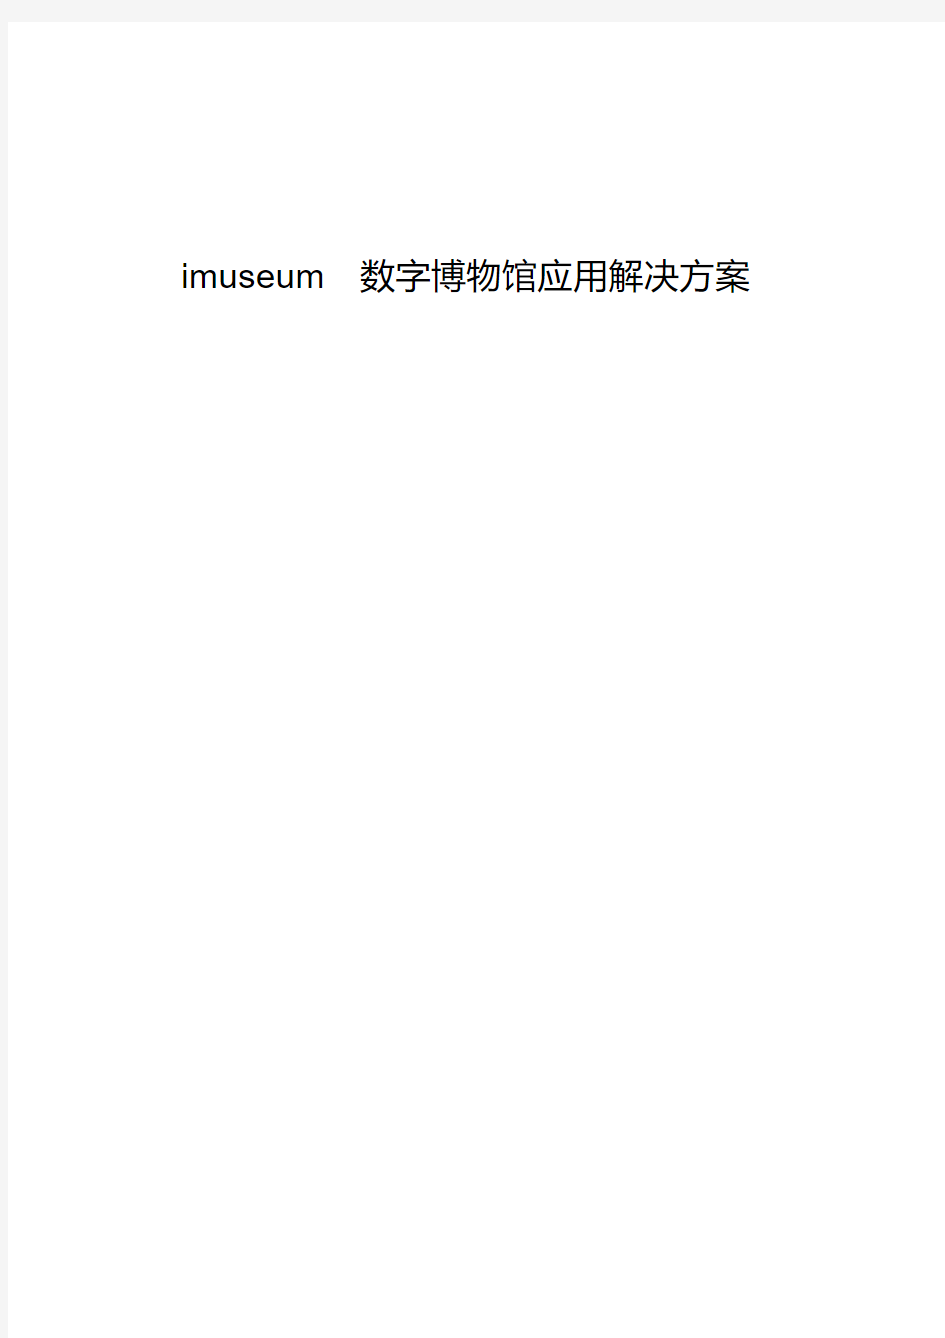 imuseum数字博物馆解决方案介绍(20200515180526)